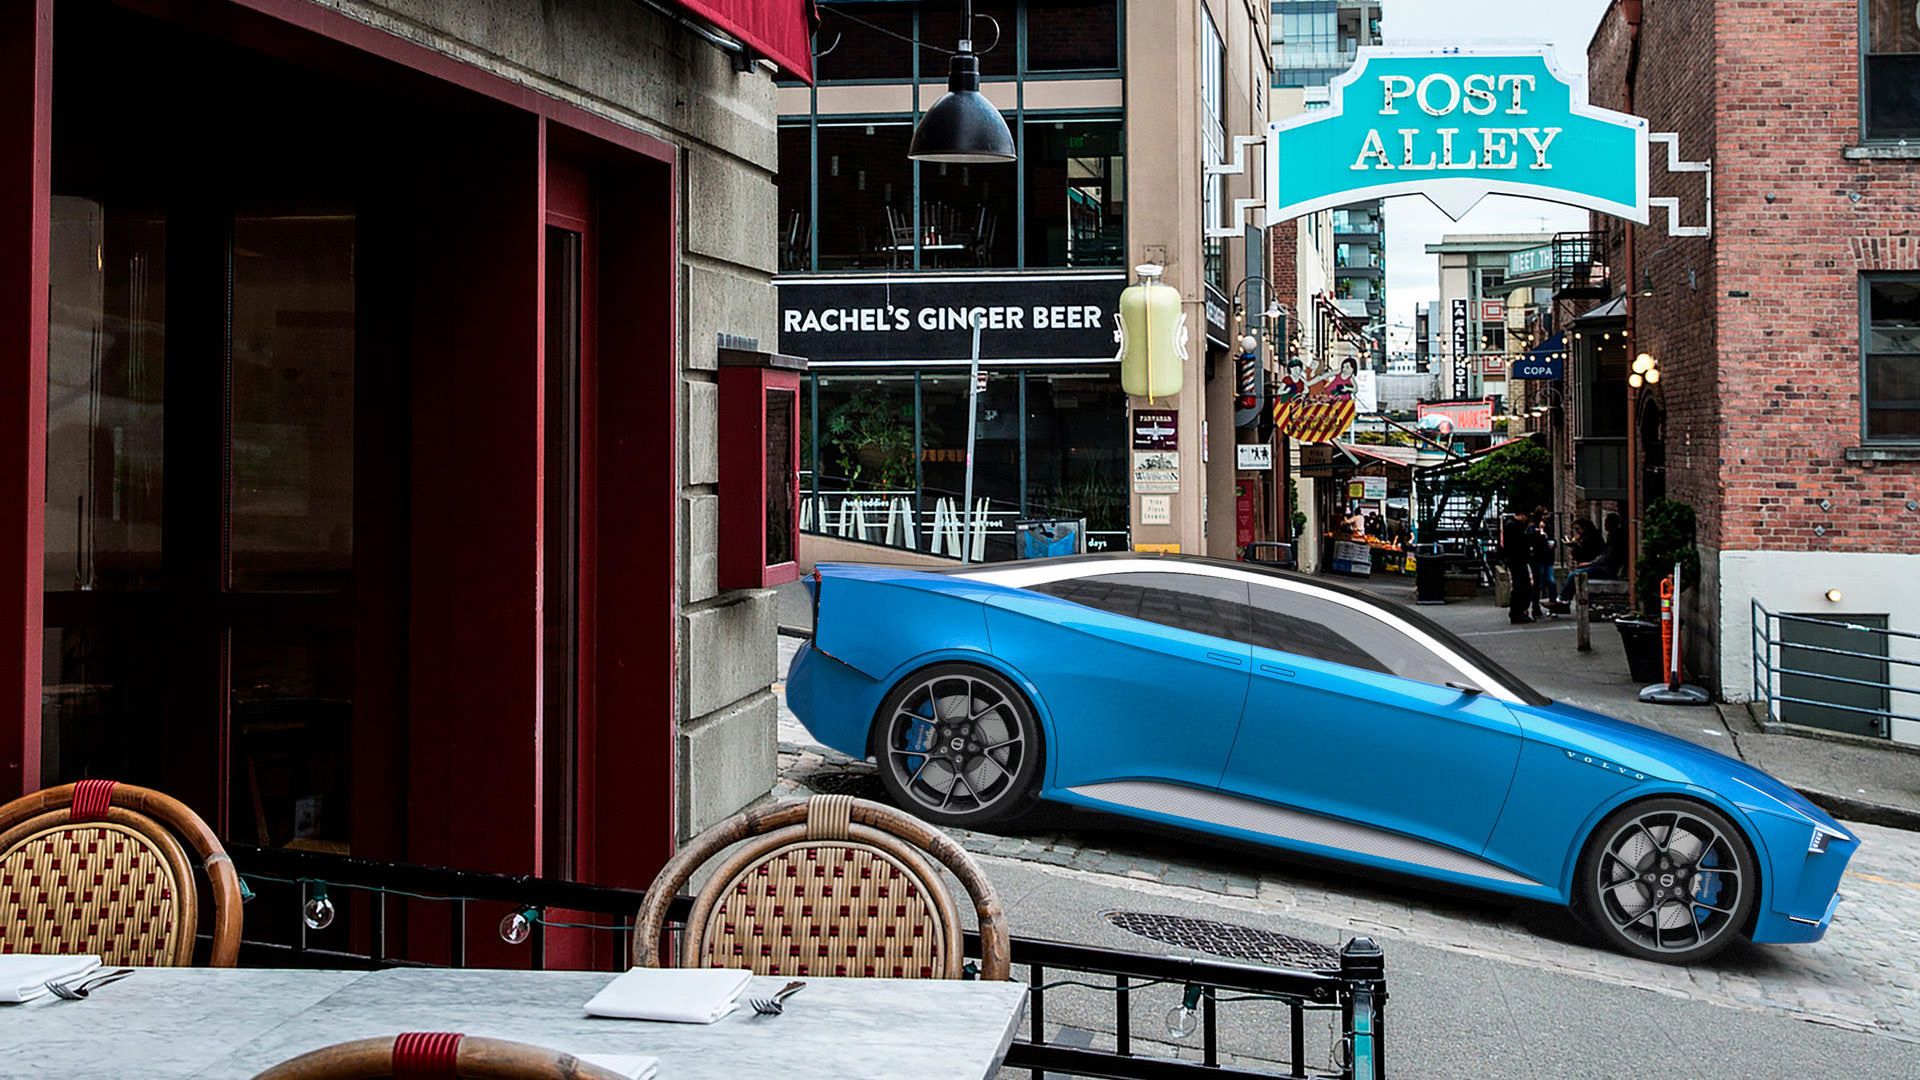 نمای جانبی خودروی مفهومی ولوو کریگر / Volvo Krigare آبی رنگ در کوچه